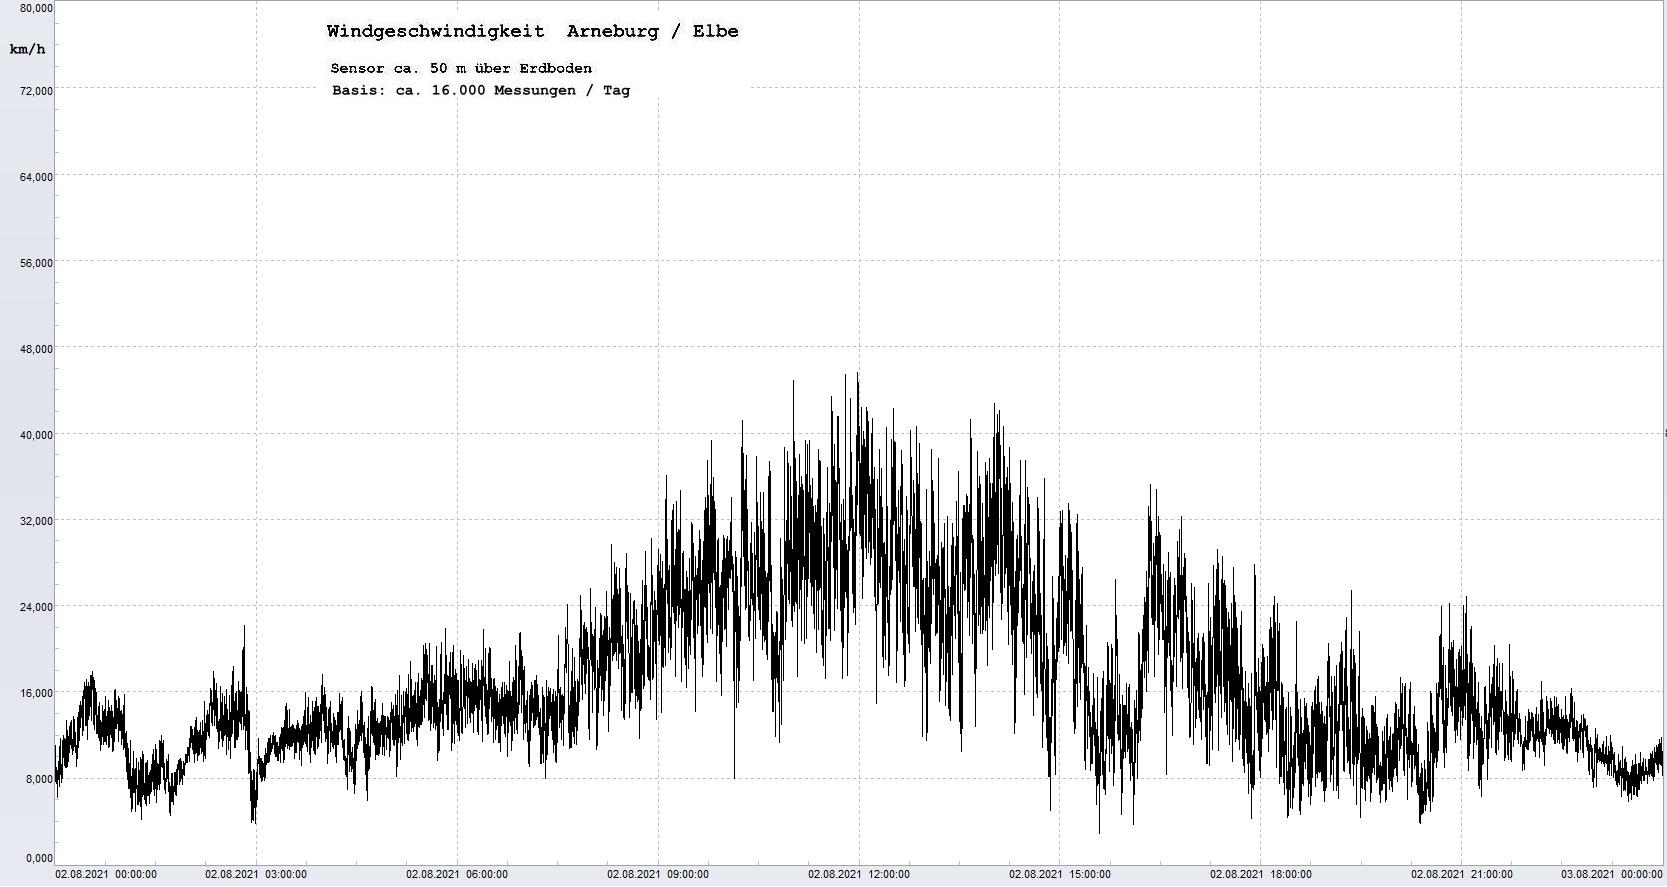 Arneburg Tages-Diagramm Winddaten, 02.08.2021
  Diagramm, Sensor auf Gebäude, ca. 50 m über Erdboden, Basis: 5s-Aufzeichnung